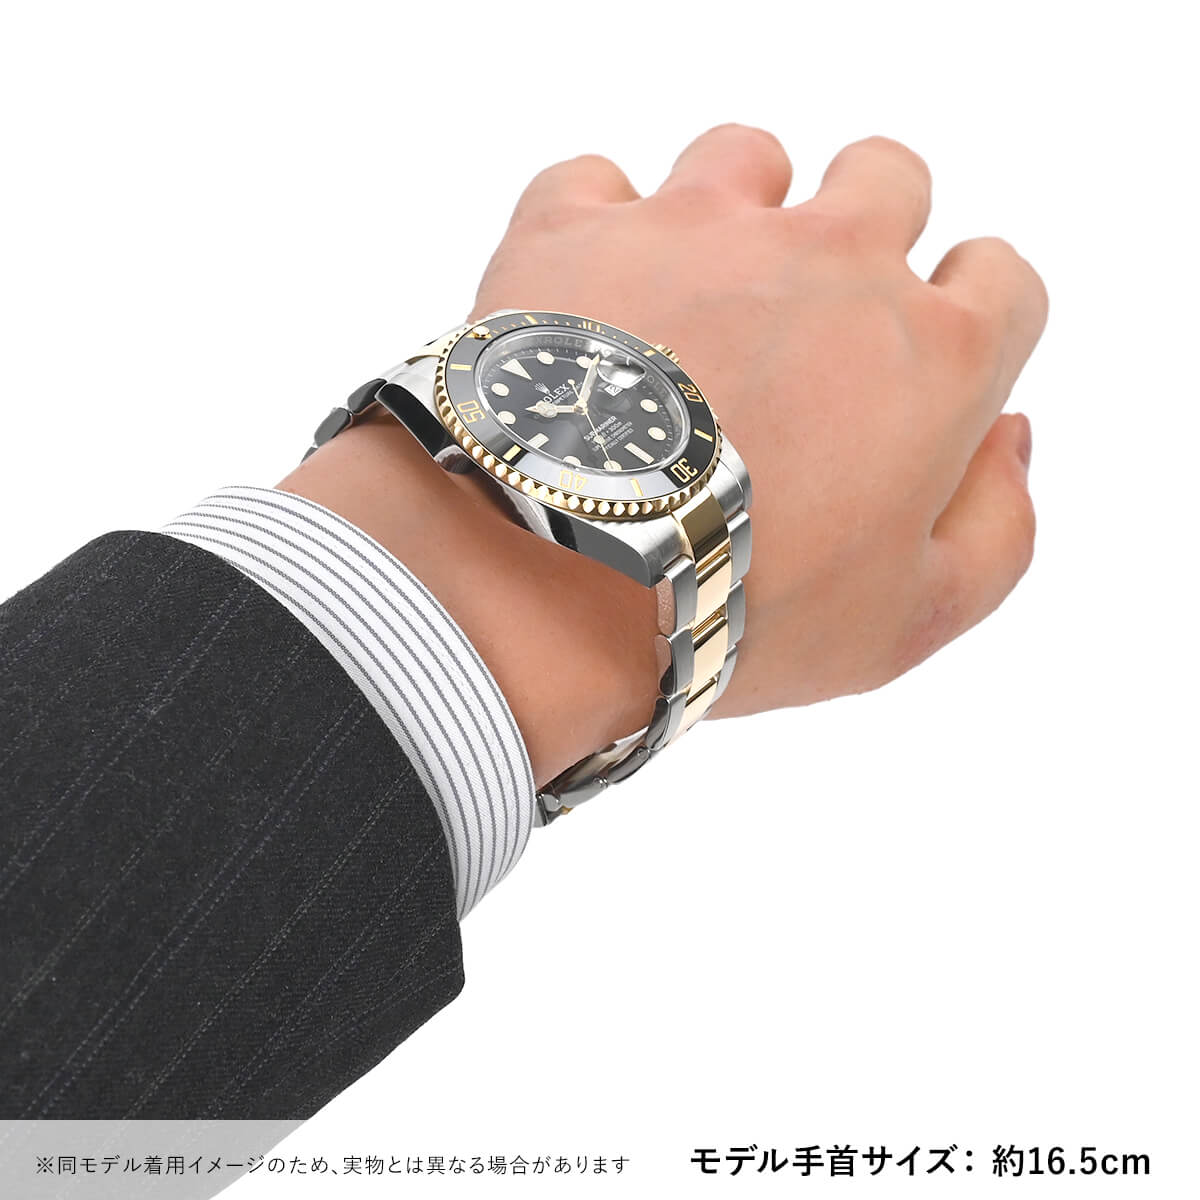 楽天市場 ロレックス Rolex サブマリーナーデイト ln 新品 メンズ 腕時計 送料無料 宝石広場